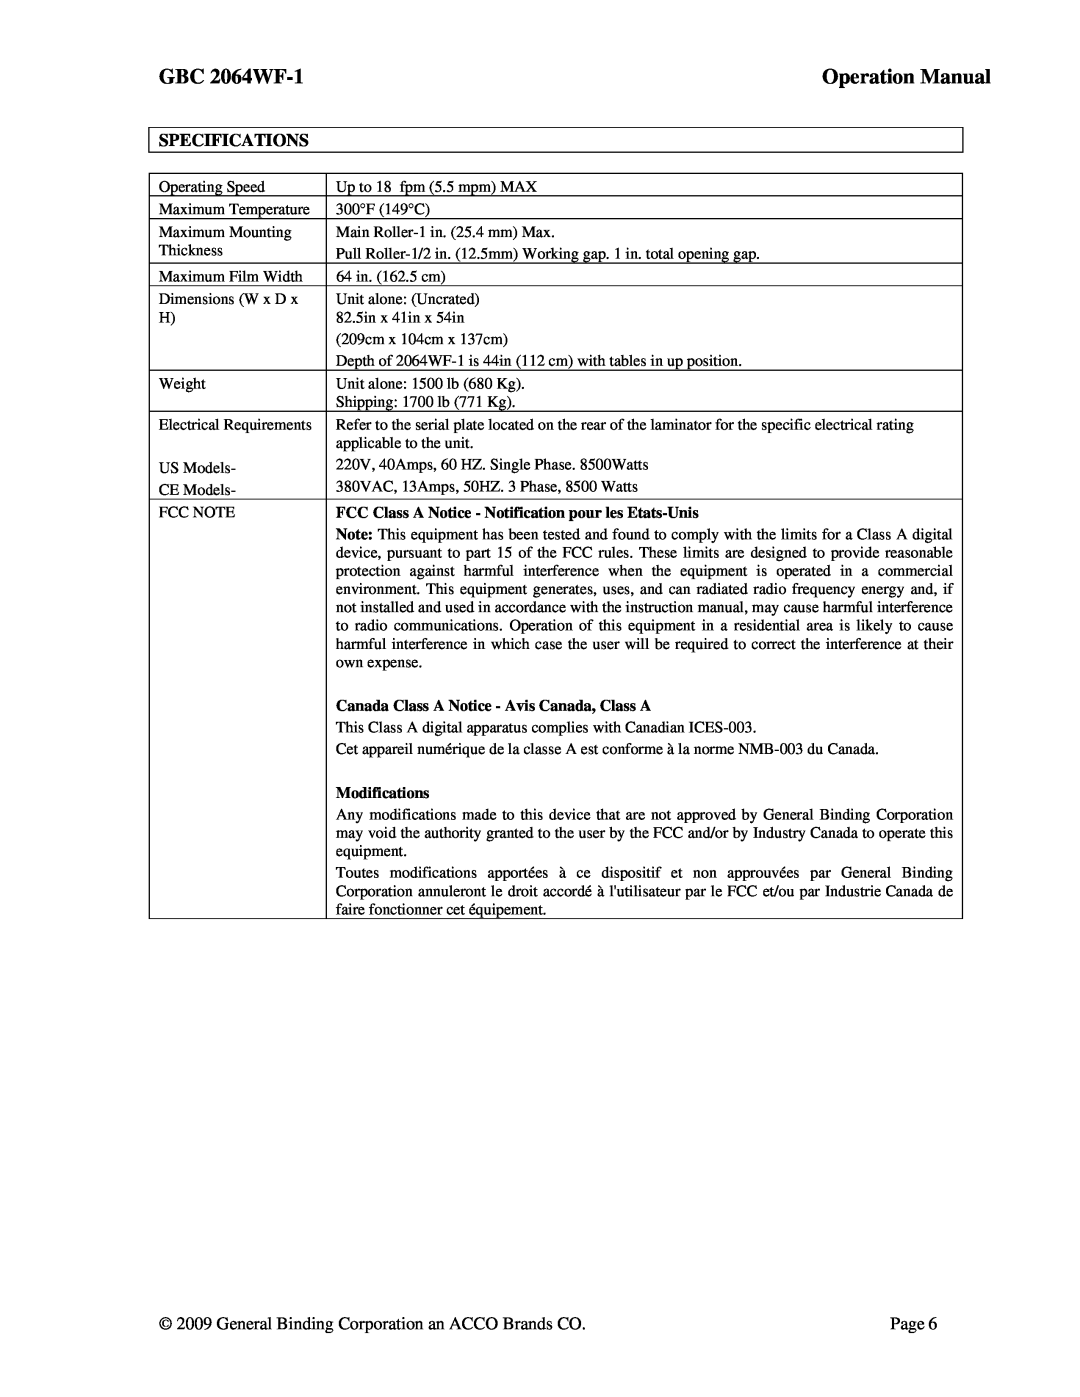 ACCO Brands GBC 2064WF-1 operation manual FCC Class A Notice - Notification pour les Etats-Unis, Modifications 